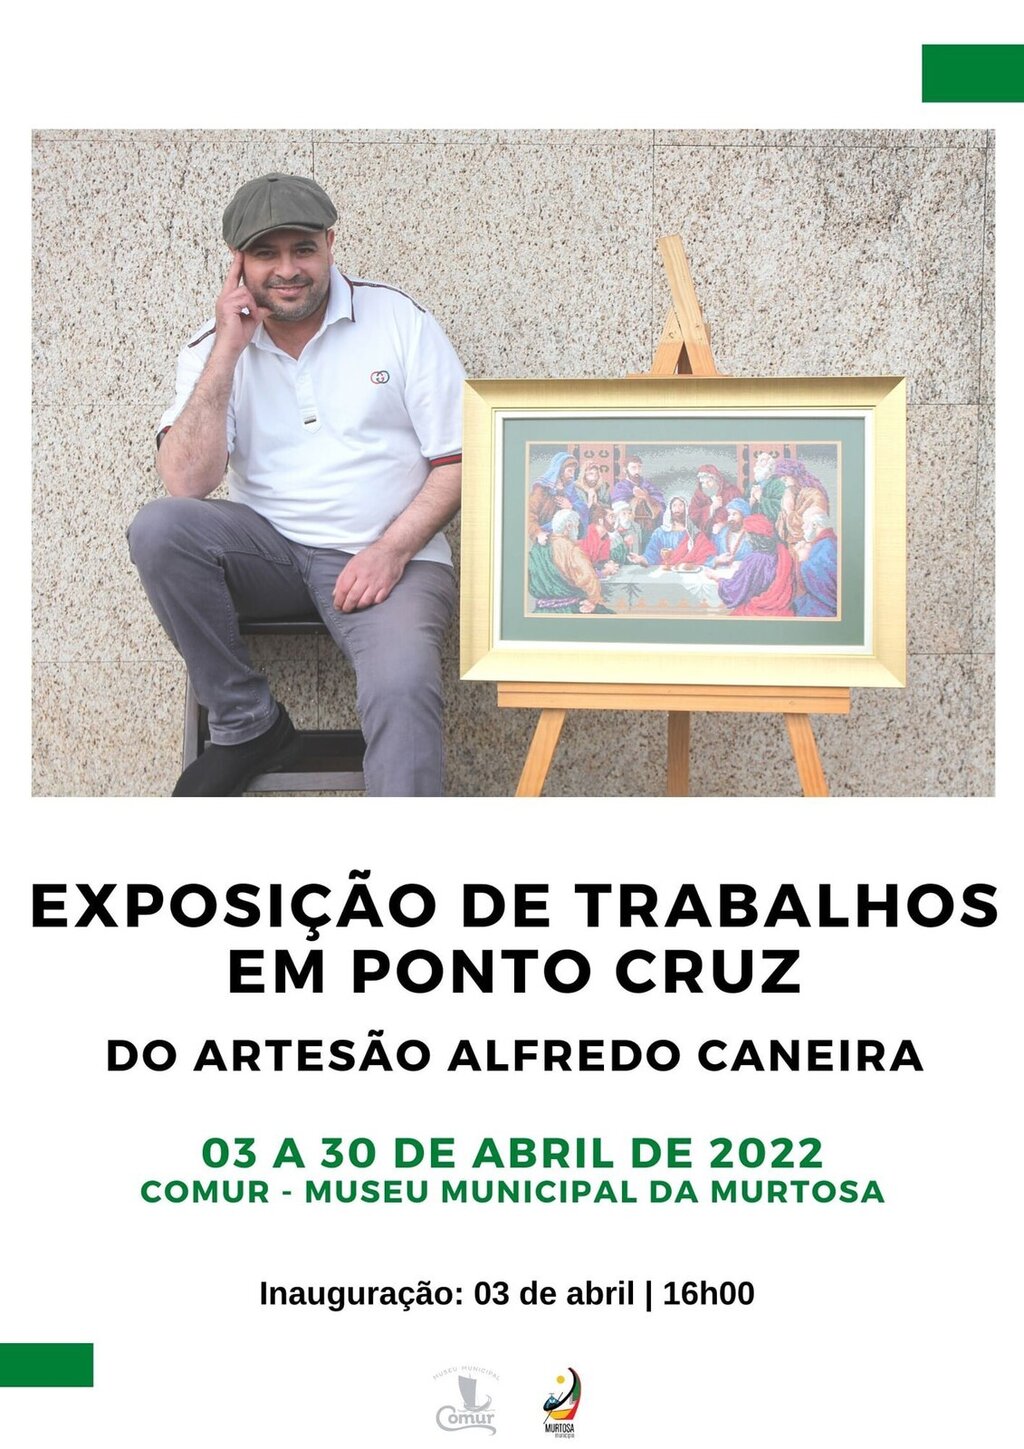 Alfredo Caneira Mostra Trabalhos em Ponto Cruz na Comur-museu Municipal